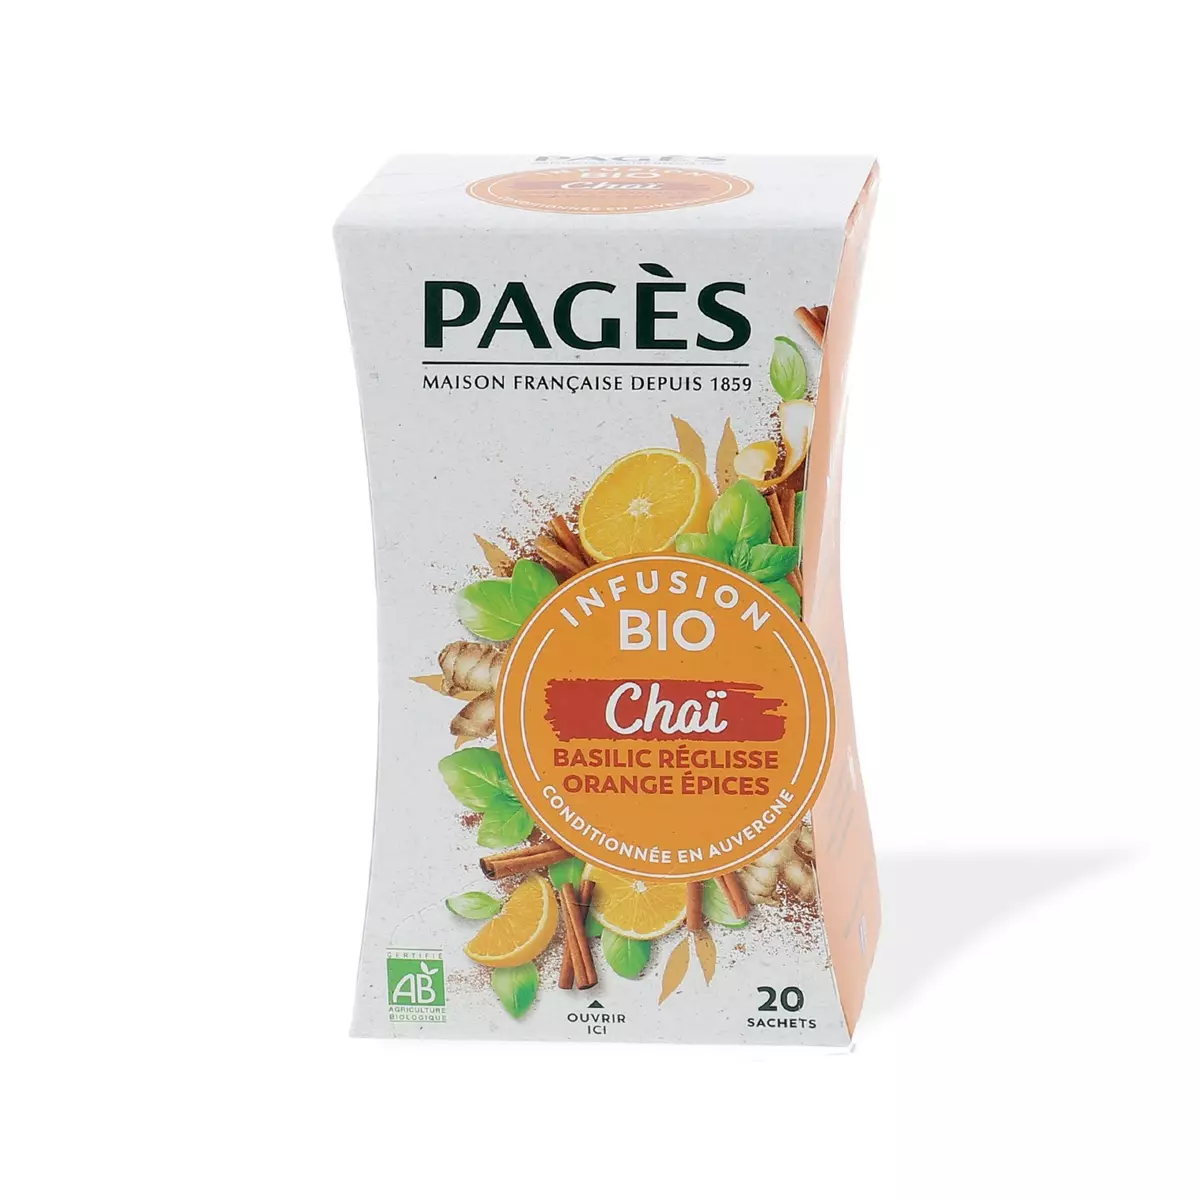 PAGES Chaï infusion bio basilic réglisse orange épices 20 sachets 30g